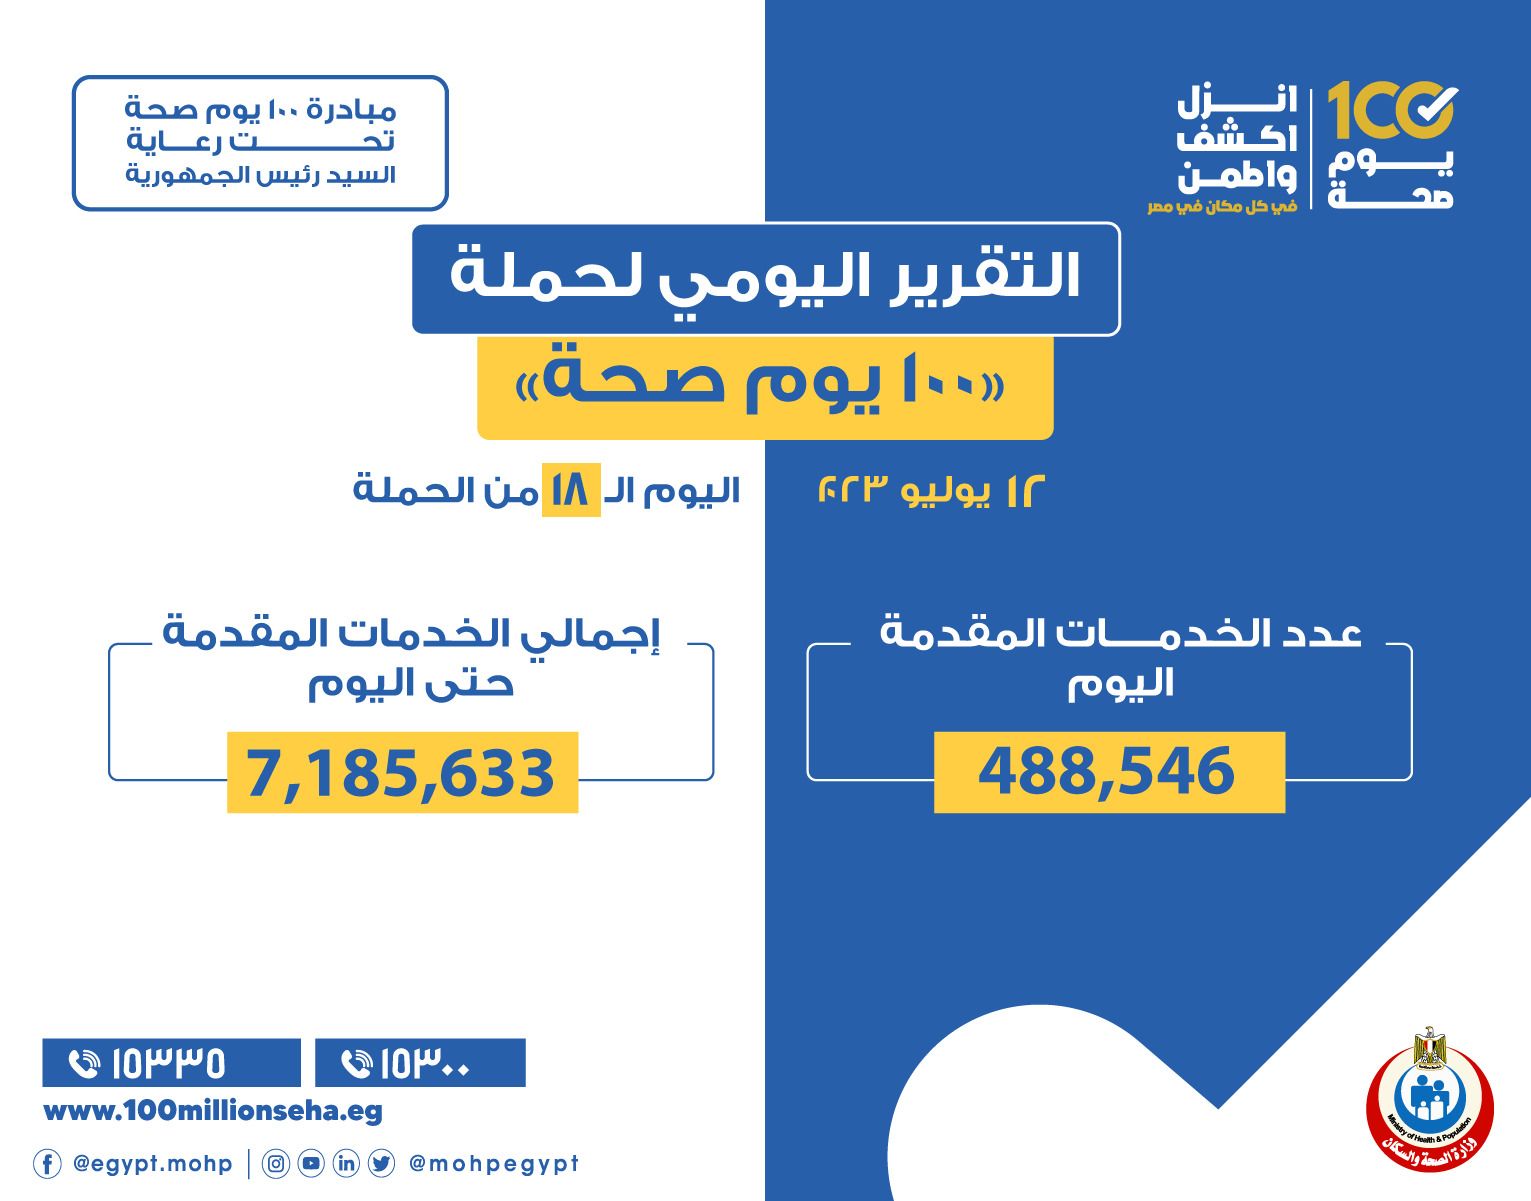 عبدالغفار: حملة «100 يوم صحة» قدمت أكثر من 7 ملايين خدمة مجانية للمواطنين خلال 18 يوما